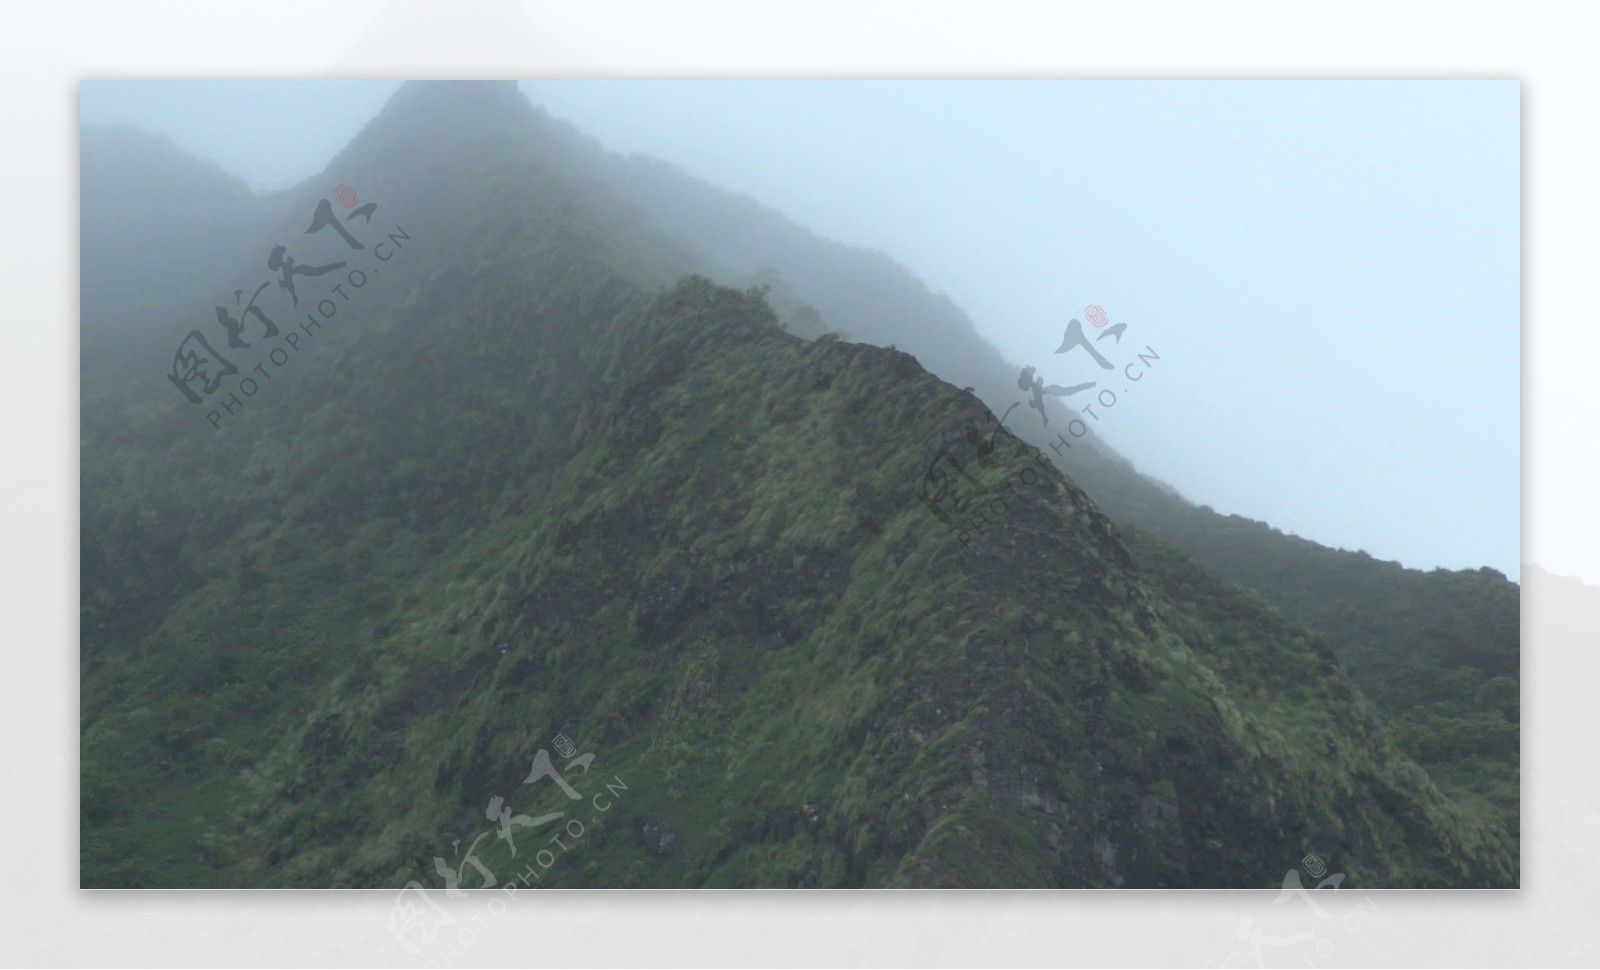 高大的夏威夷山主峰雾股票视频视频免费下载